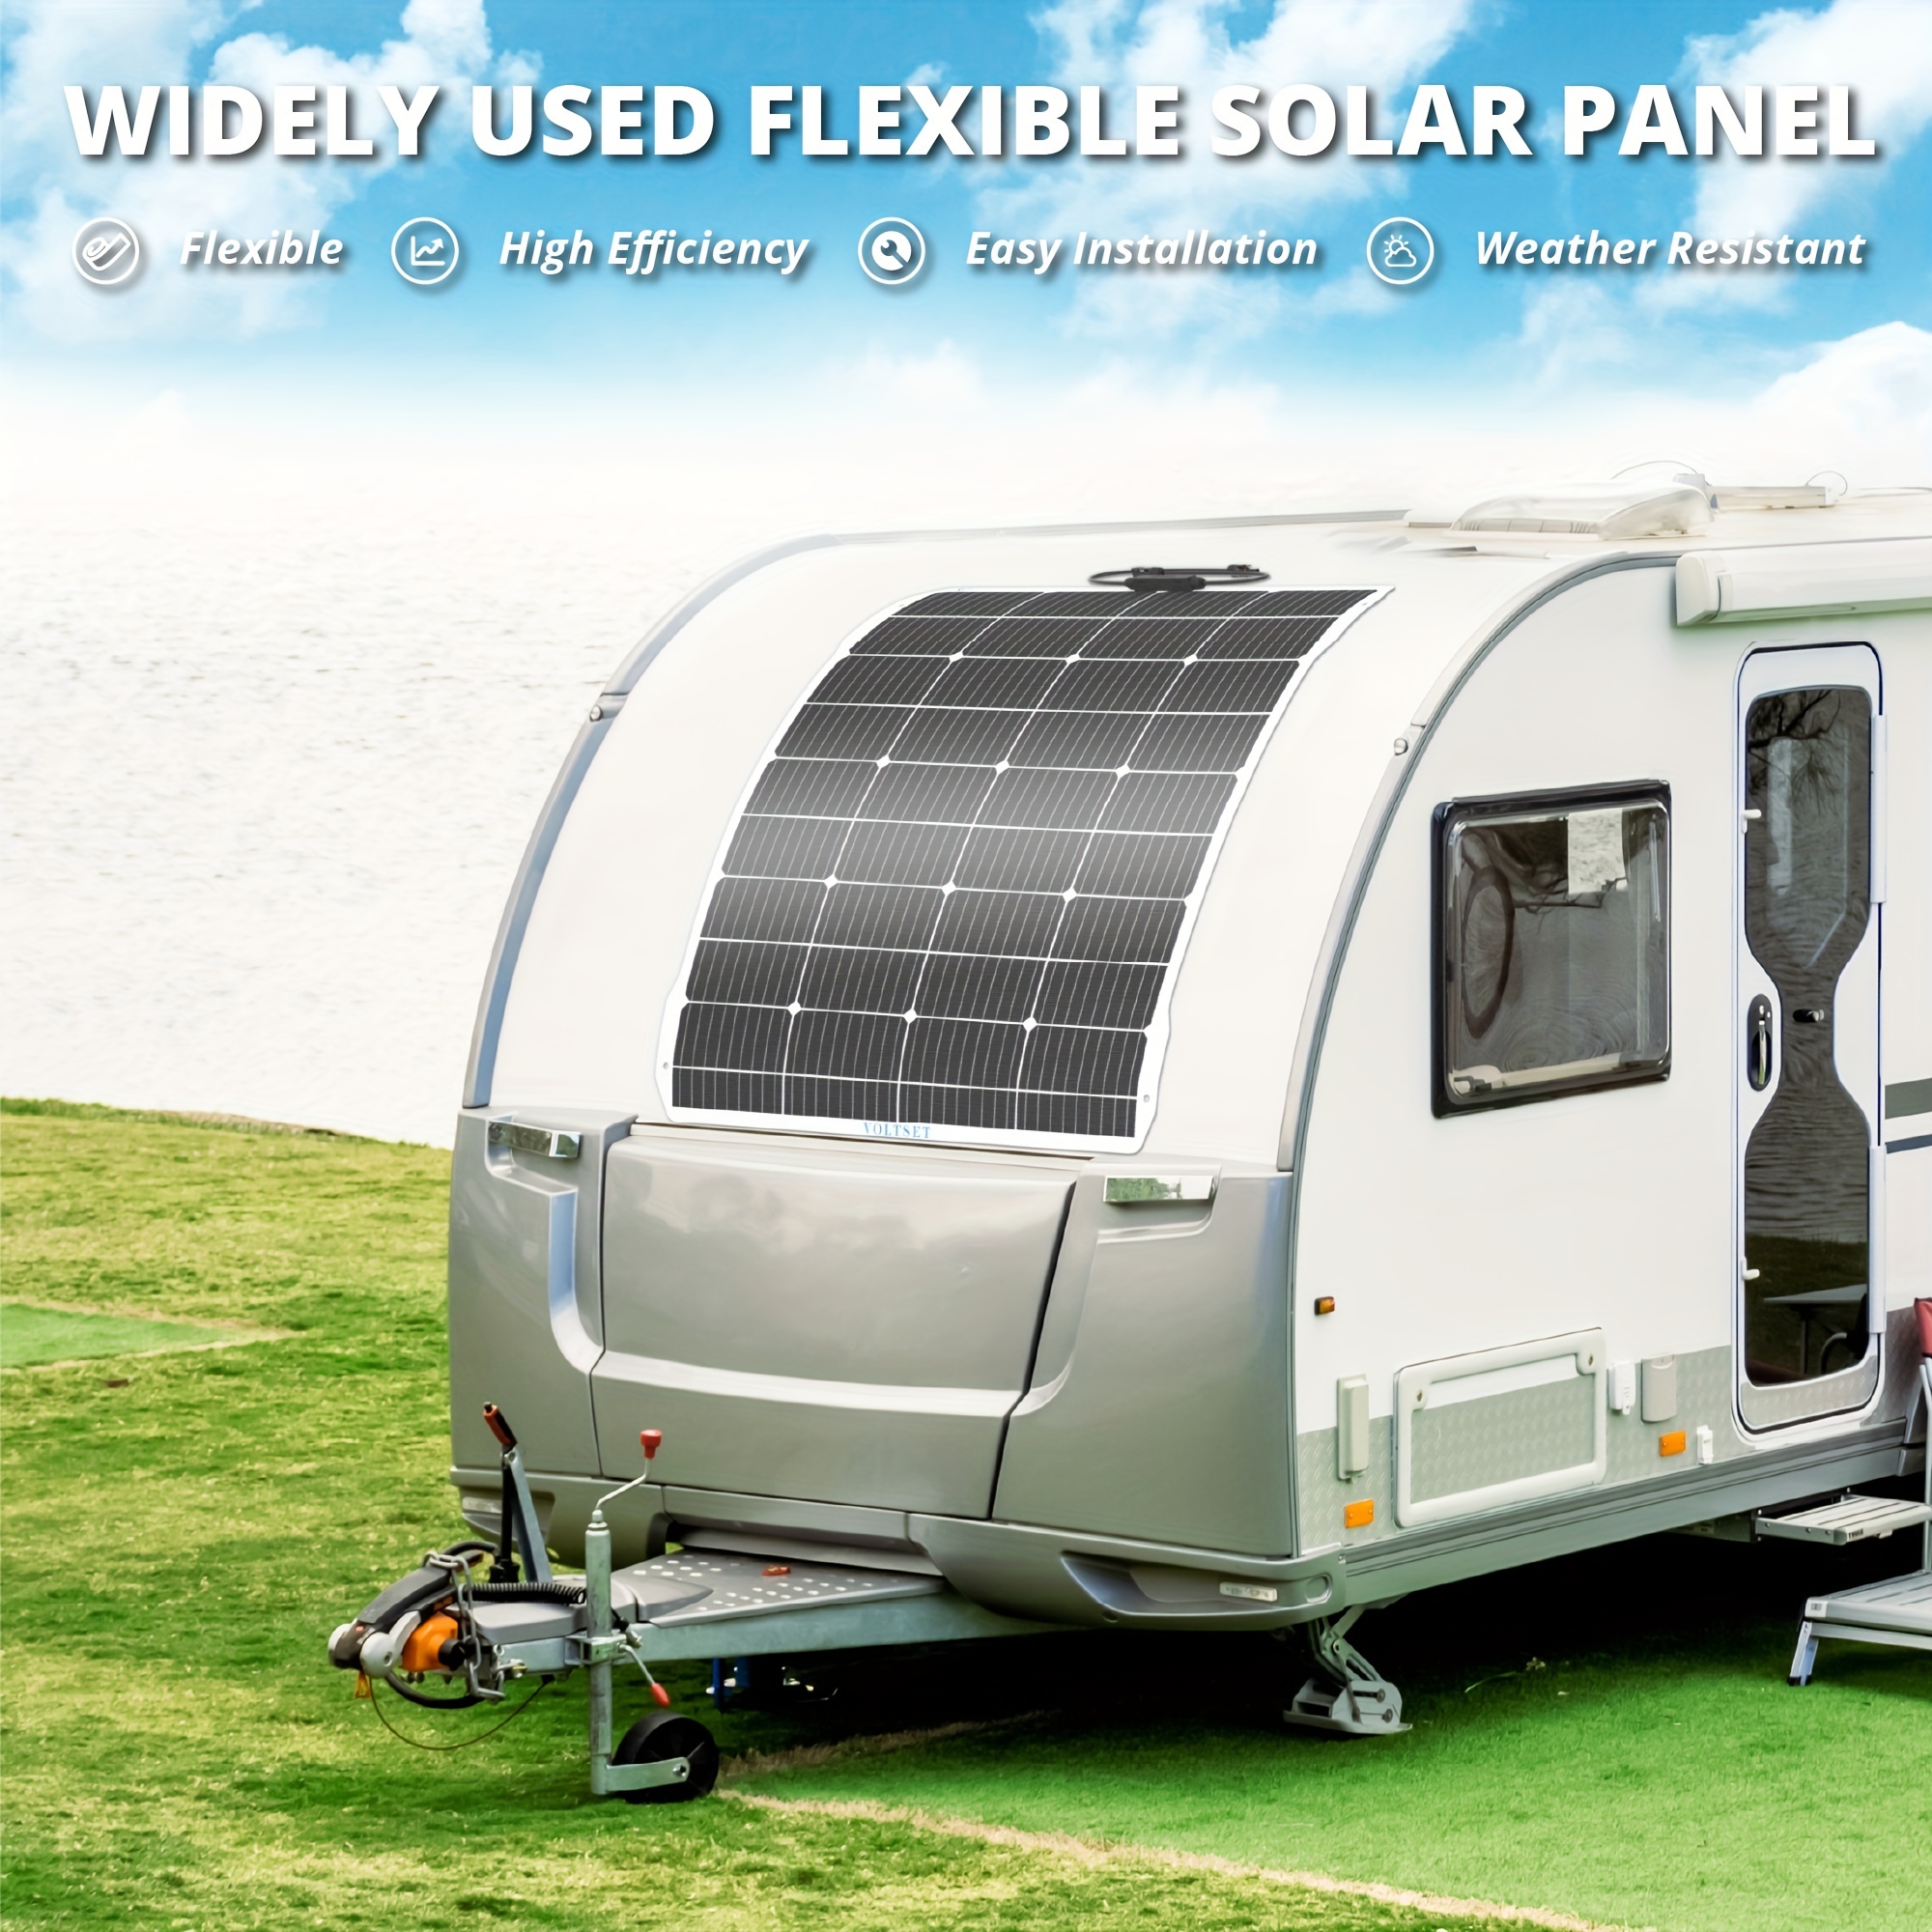 Portable flexible solar panel 100W 12V with controller - solar